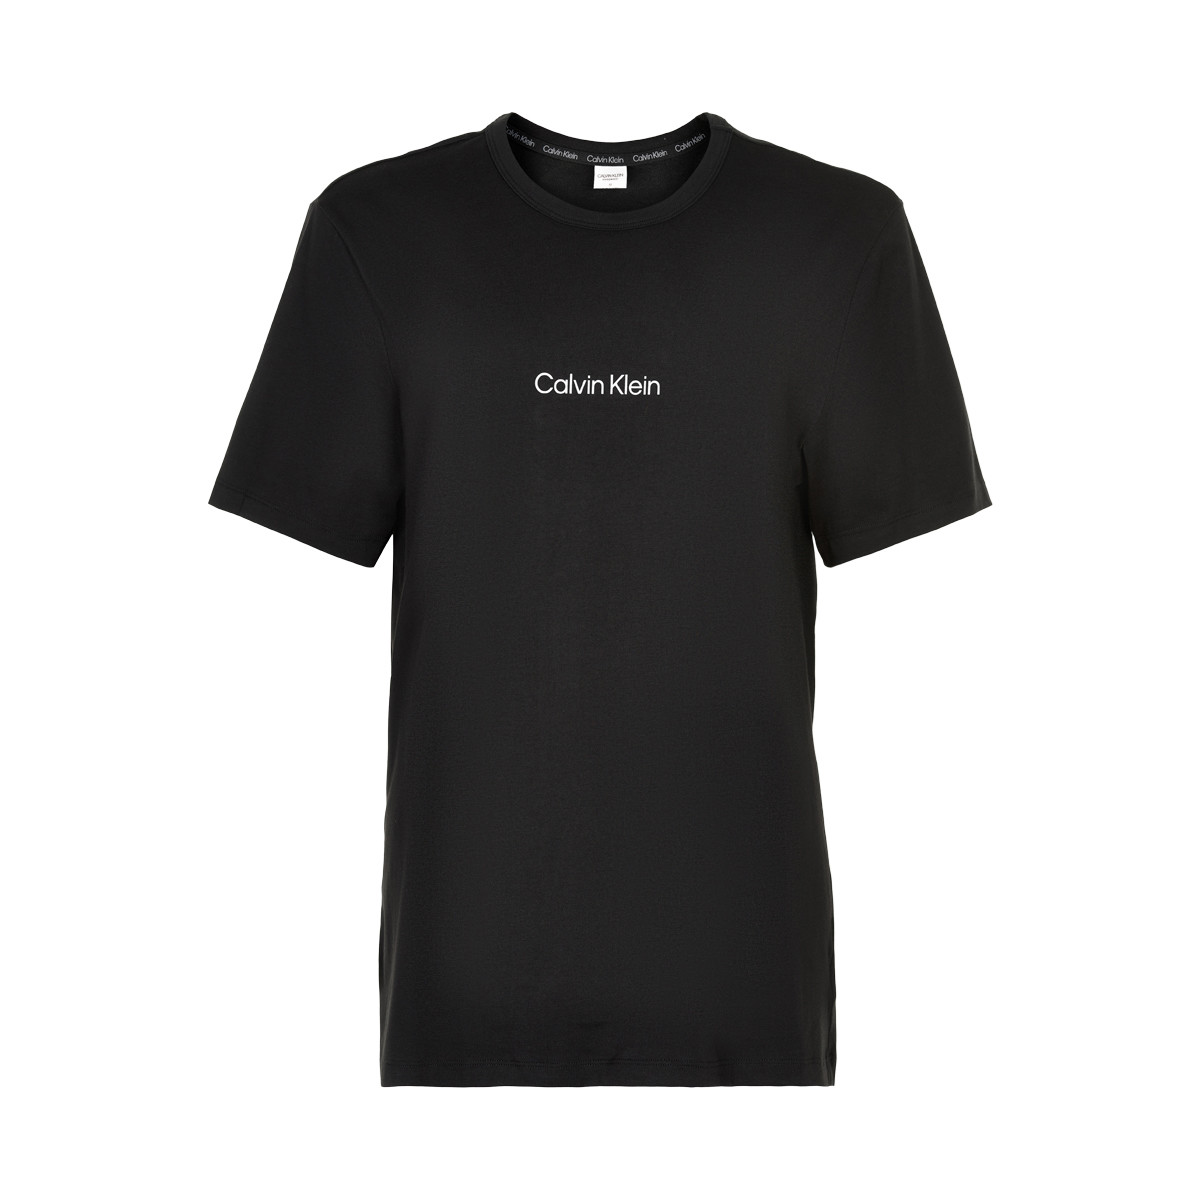 Se Calvin Klein T-shirt, Farve: Sort, Størrelse: L, Dame hos Netlingeri.dk